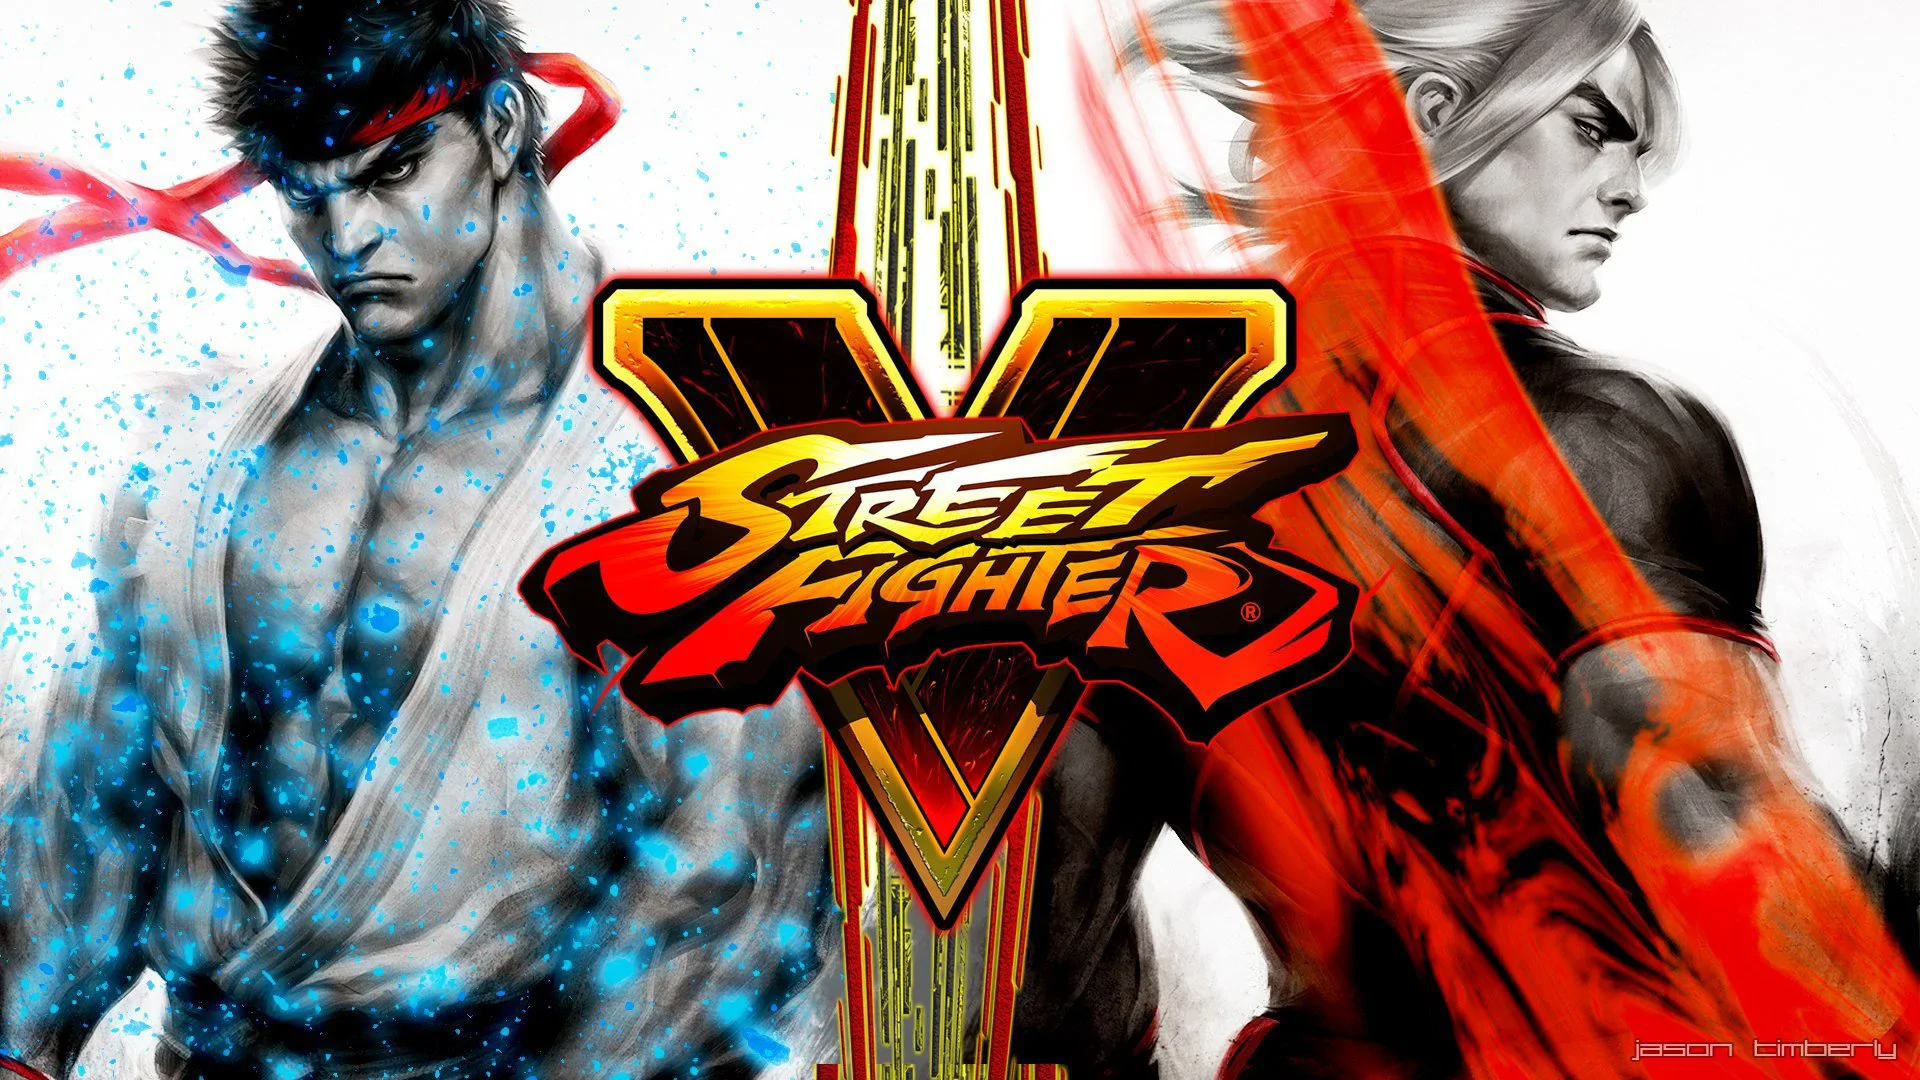 Street Fighter powraca! Tym razem w formie filmu. Zobacz pierwszy plakat